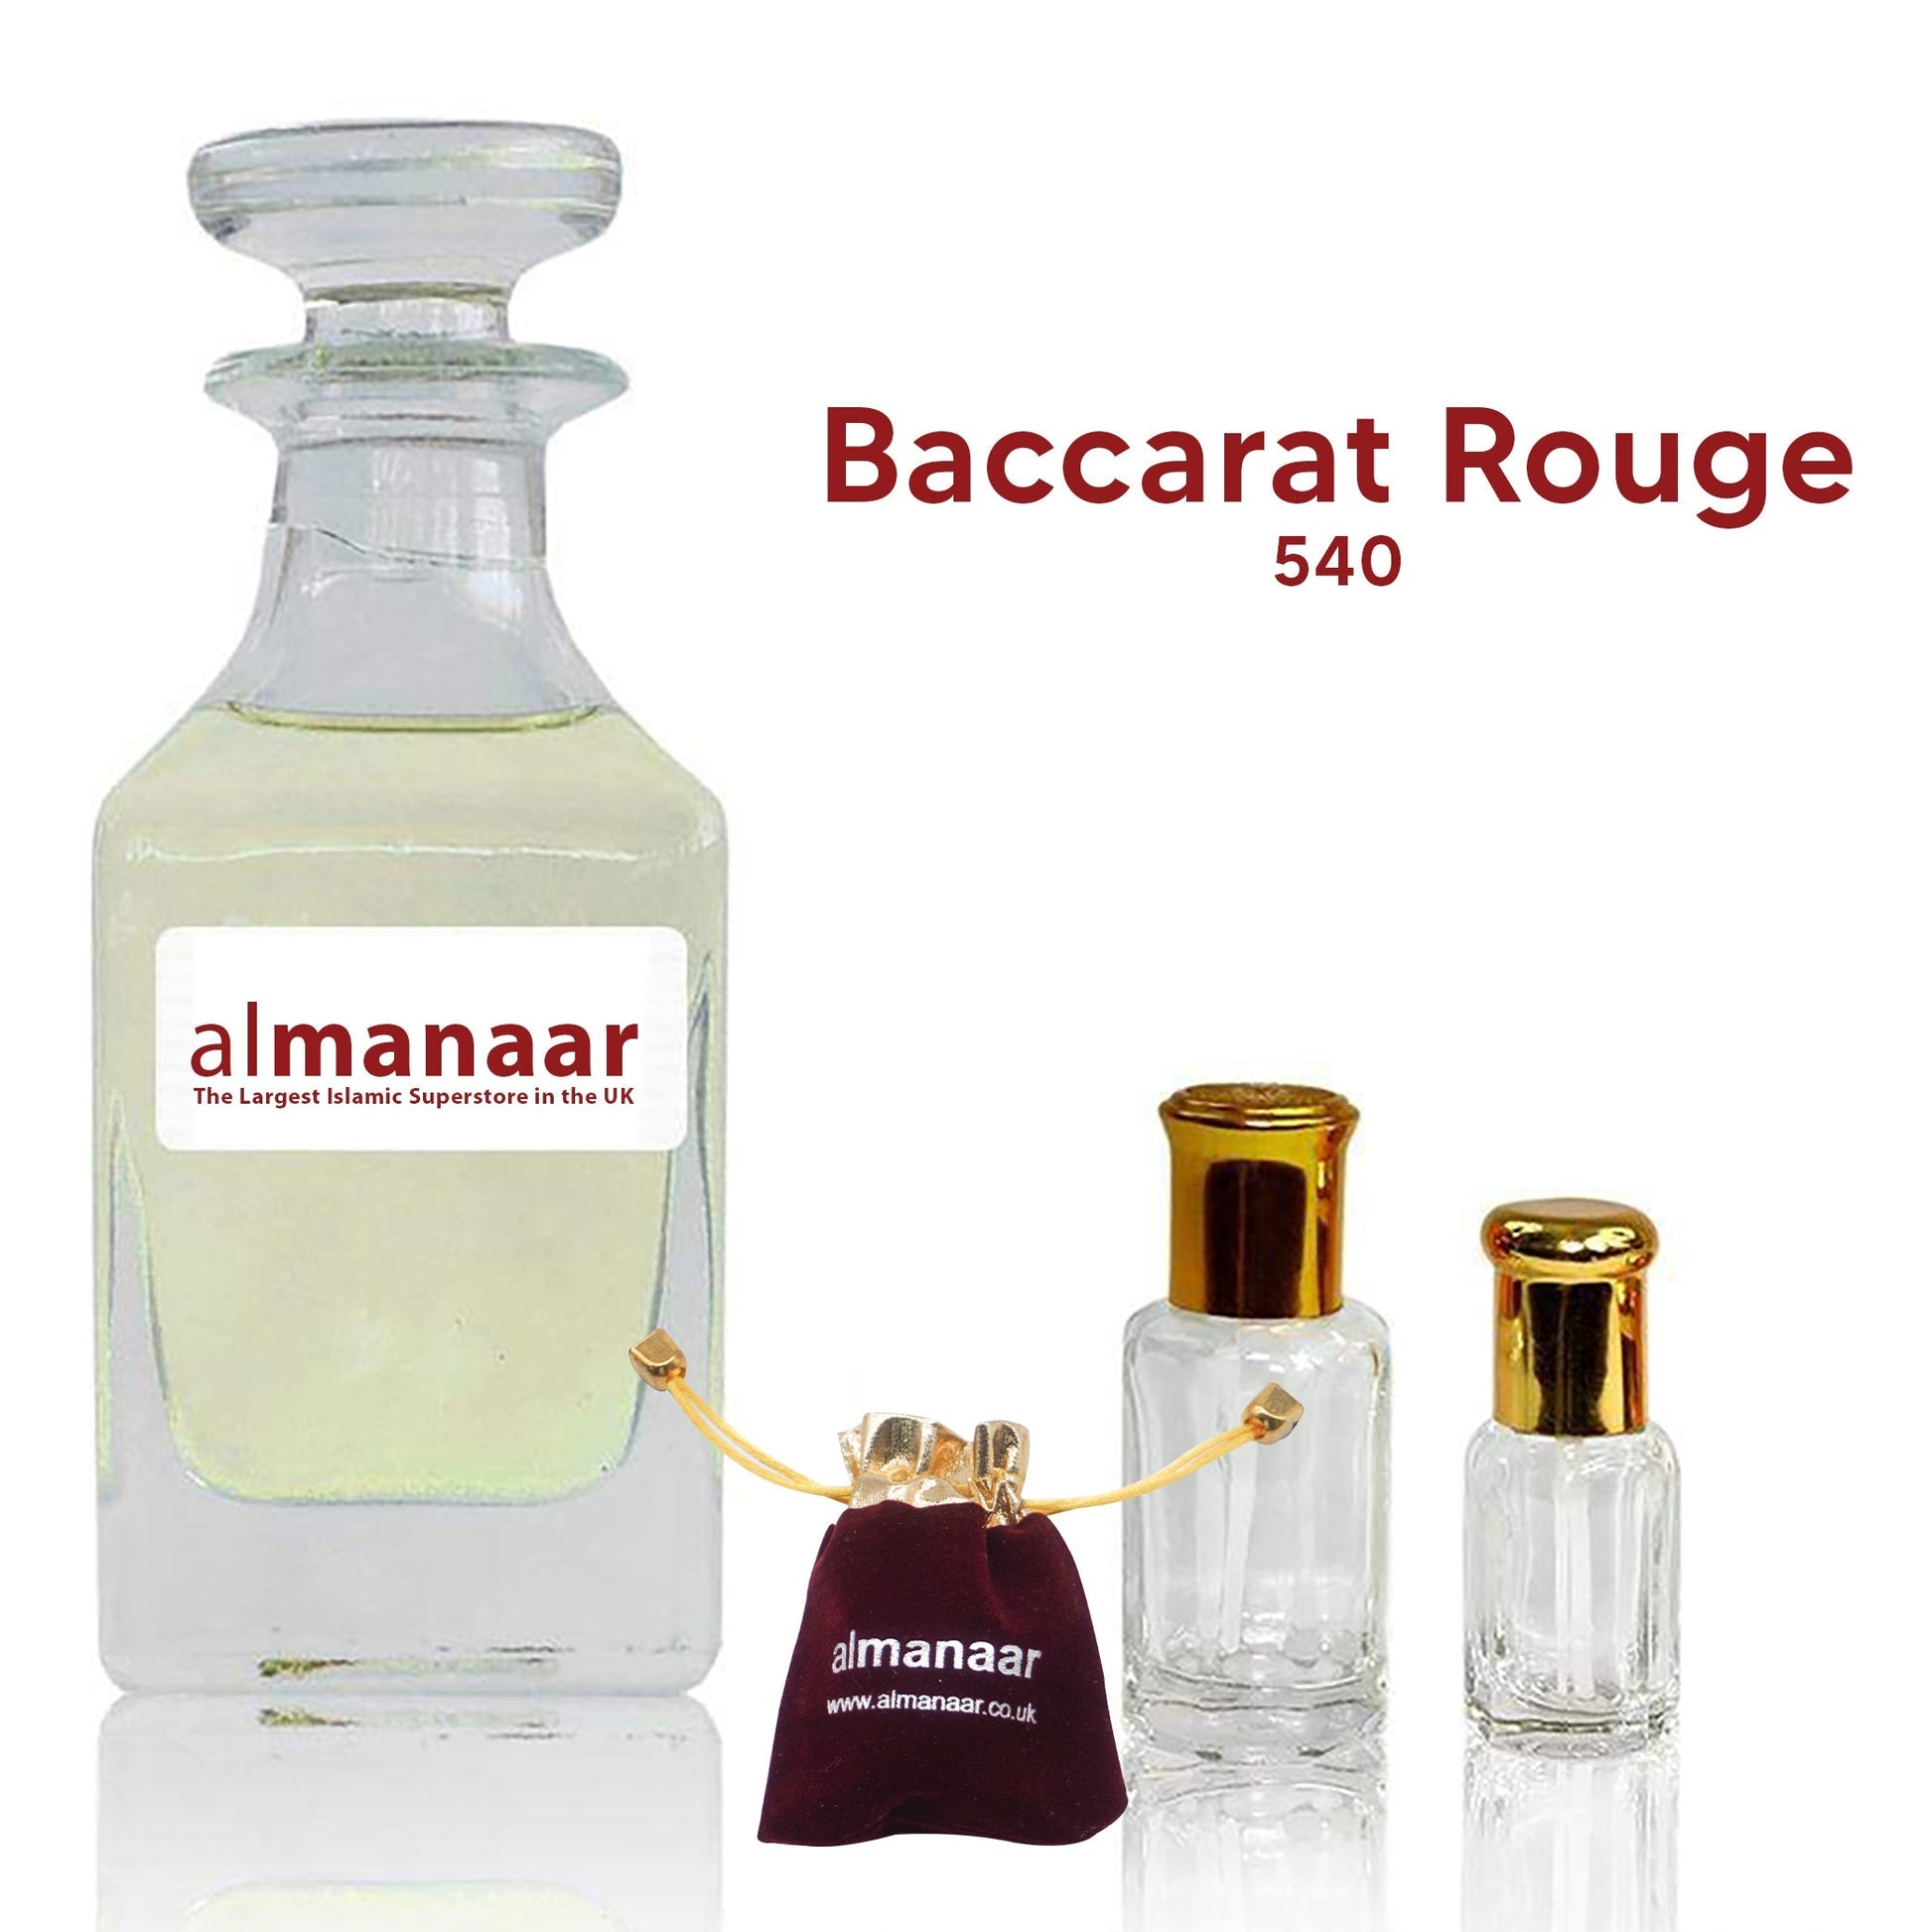 Baccarat Rouge - Concentrated Perfume Oil by almanaar-almanaar Islamic Store